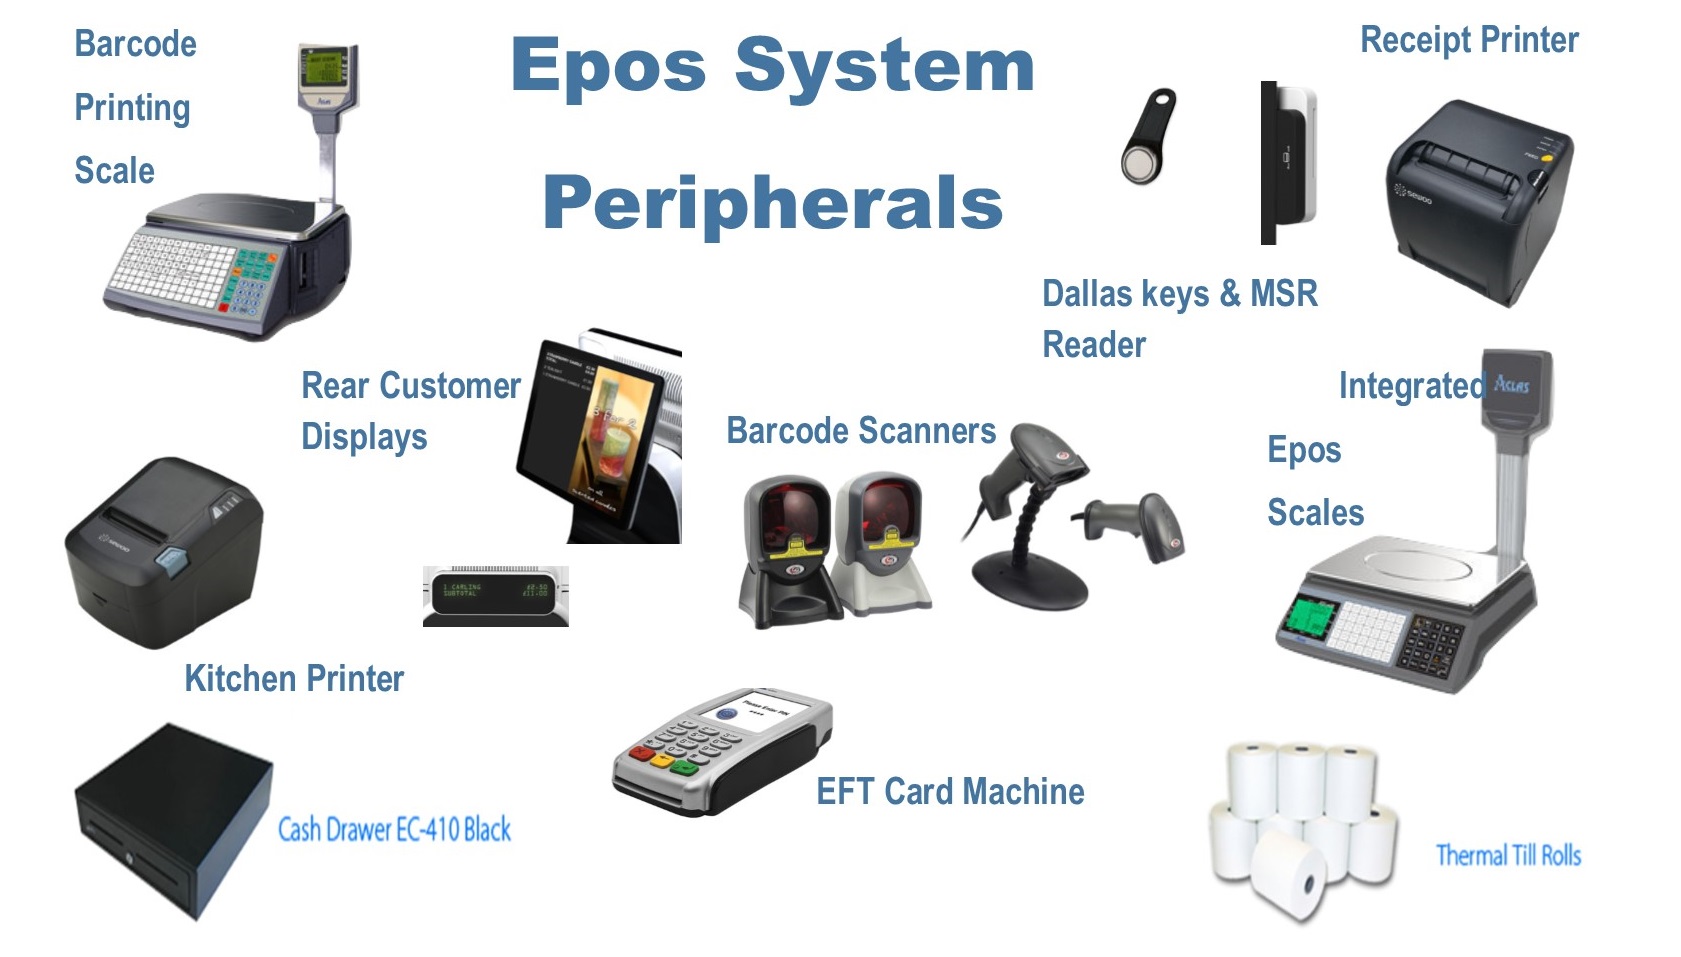 Epos Peripherals & Accessories